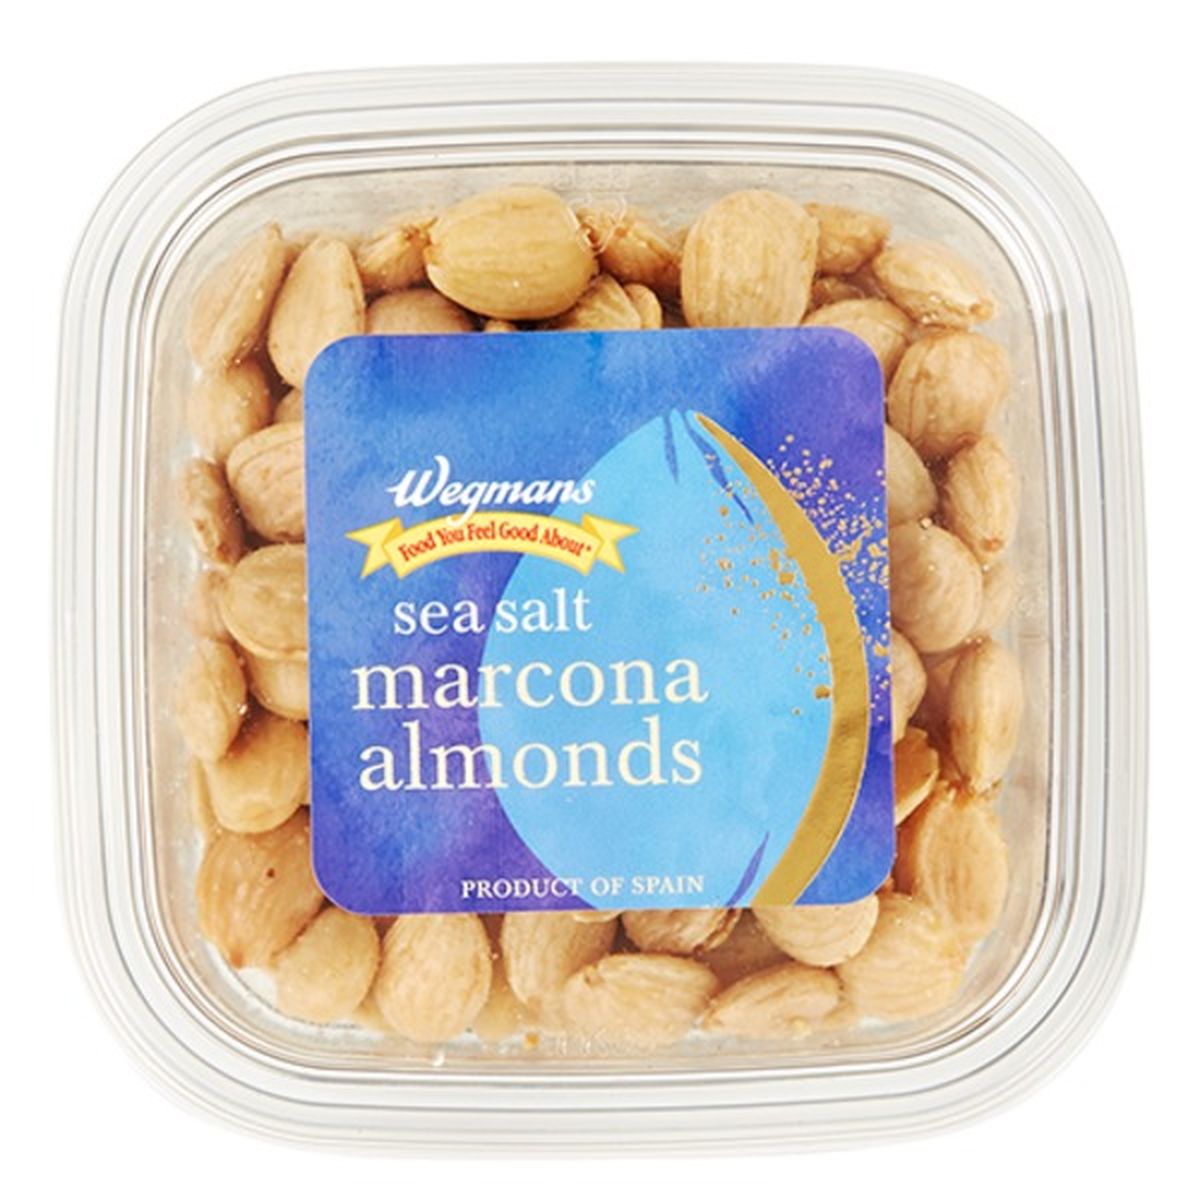 Calories in Wegmans Sea Salt Marcona Almonds